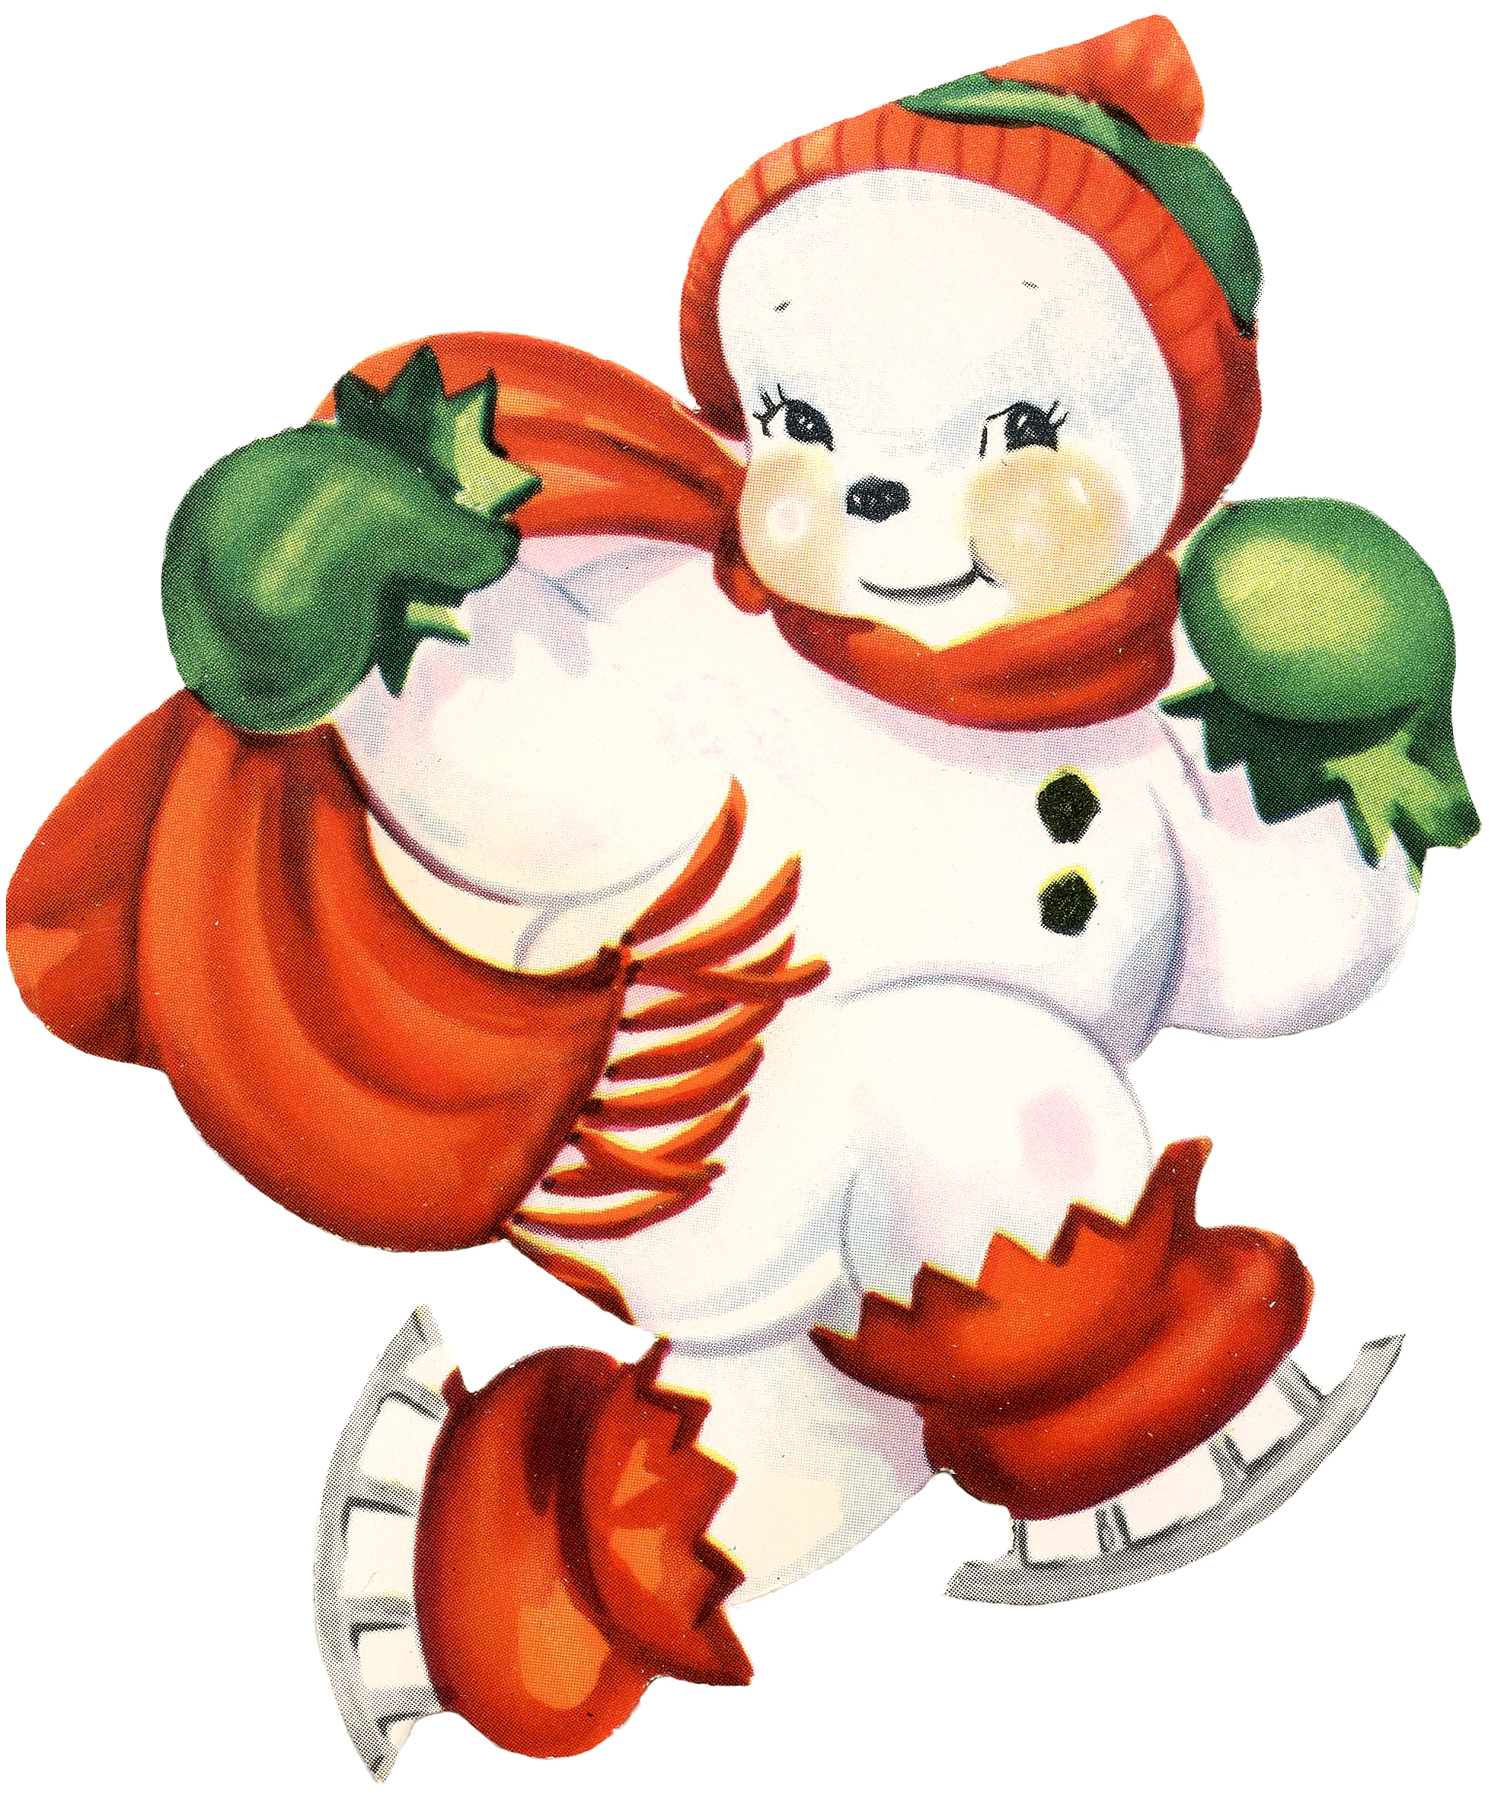 Cute Snowman Image Retro - The Graphics Fairy